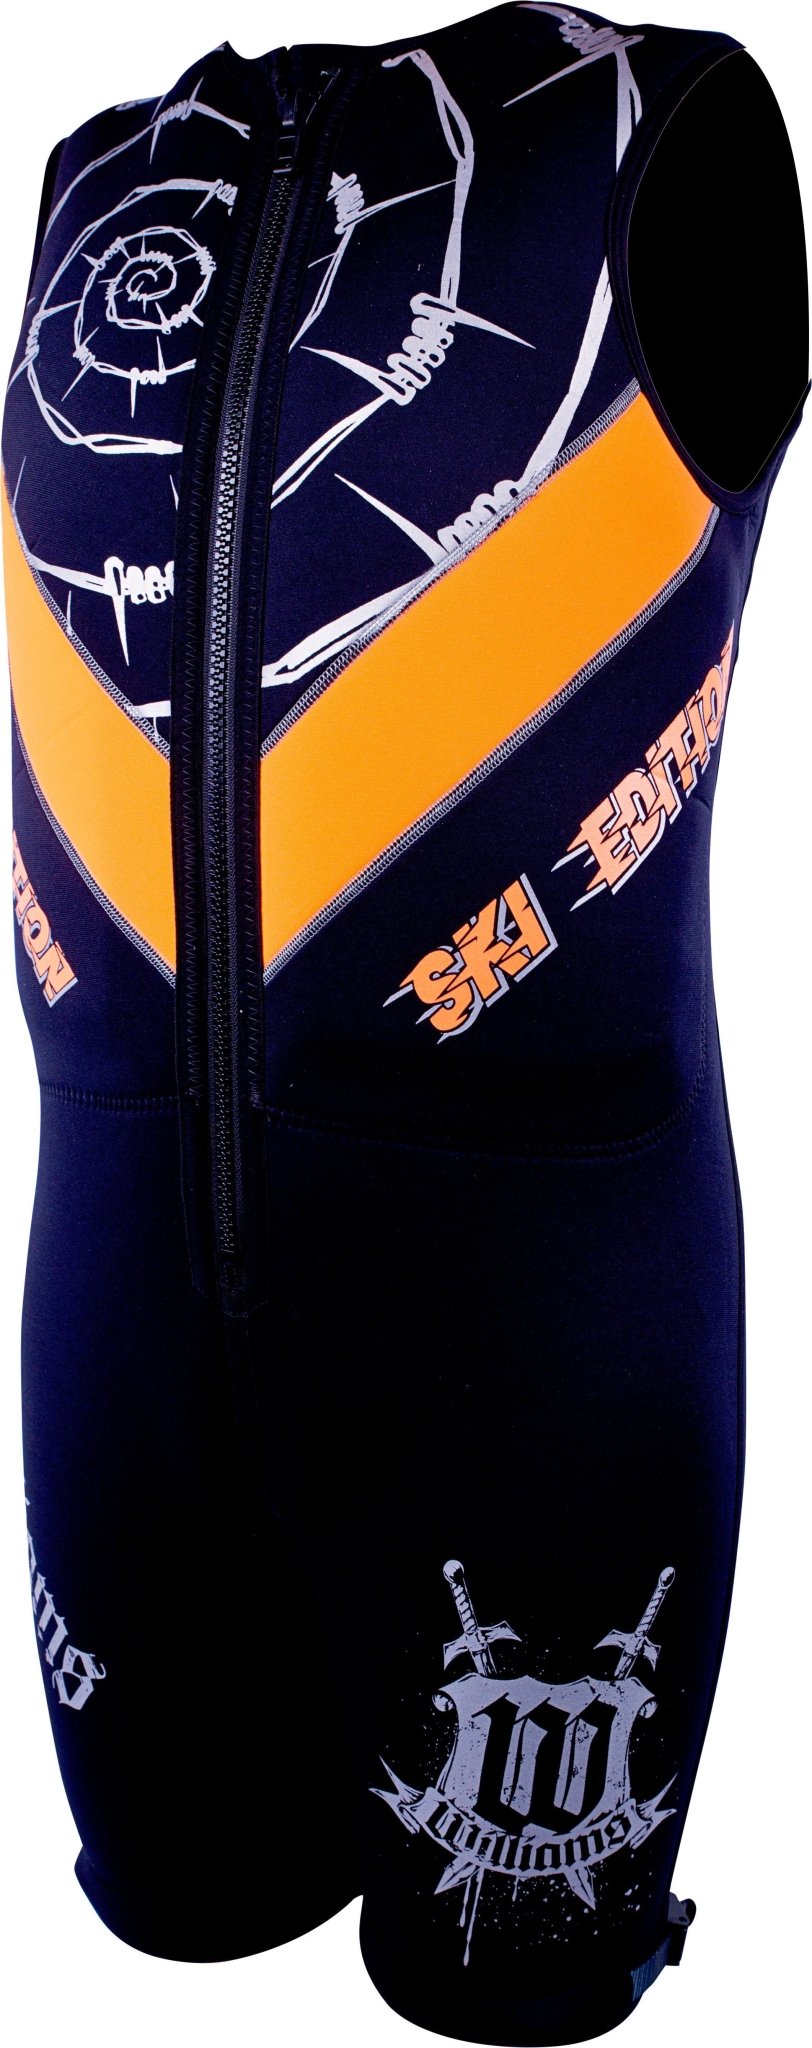 Mens Sports Wetsuit -Williams208241-s-Black/Orange